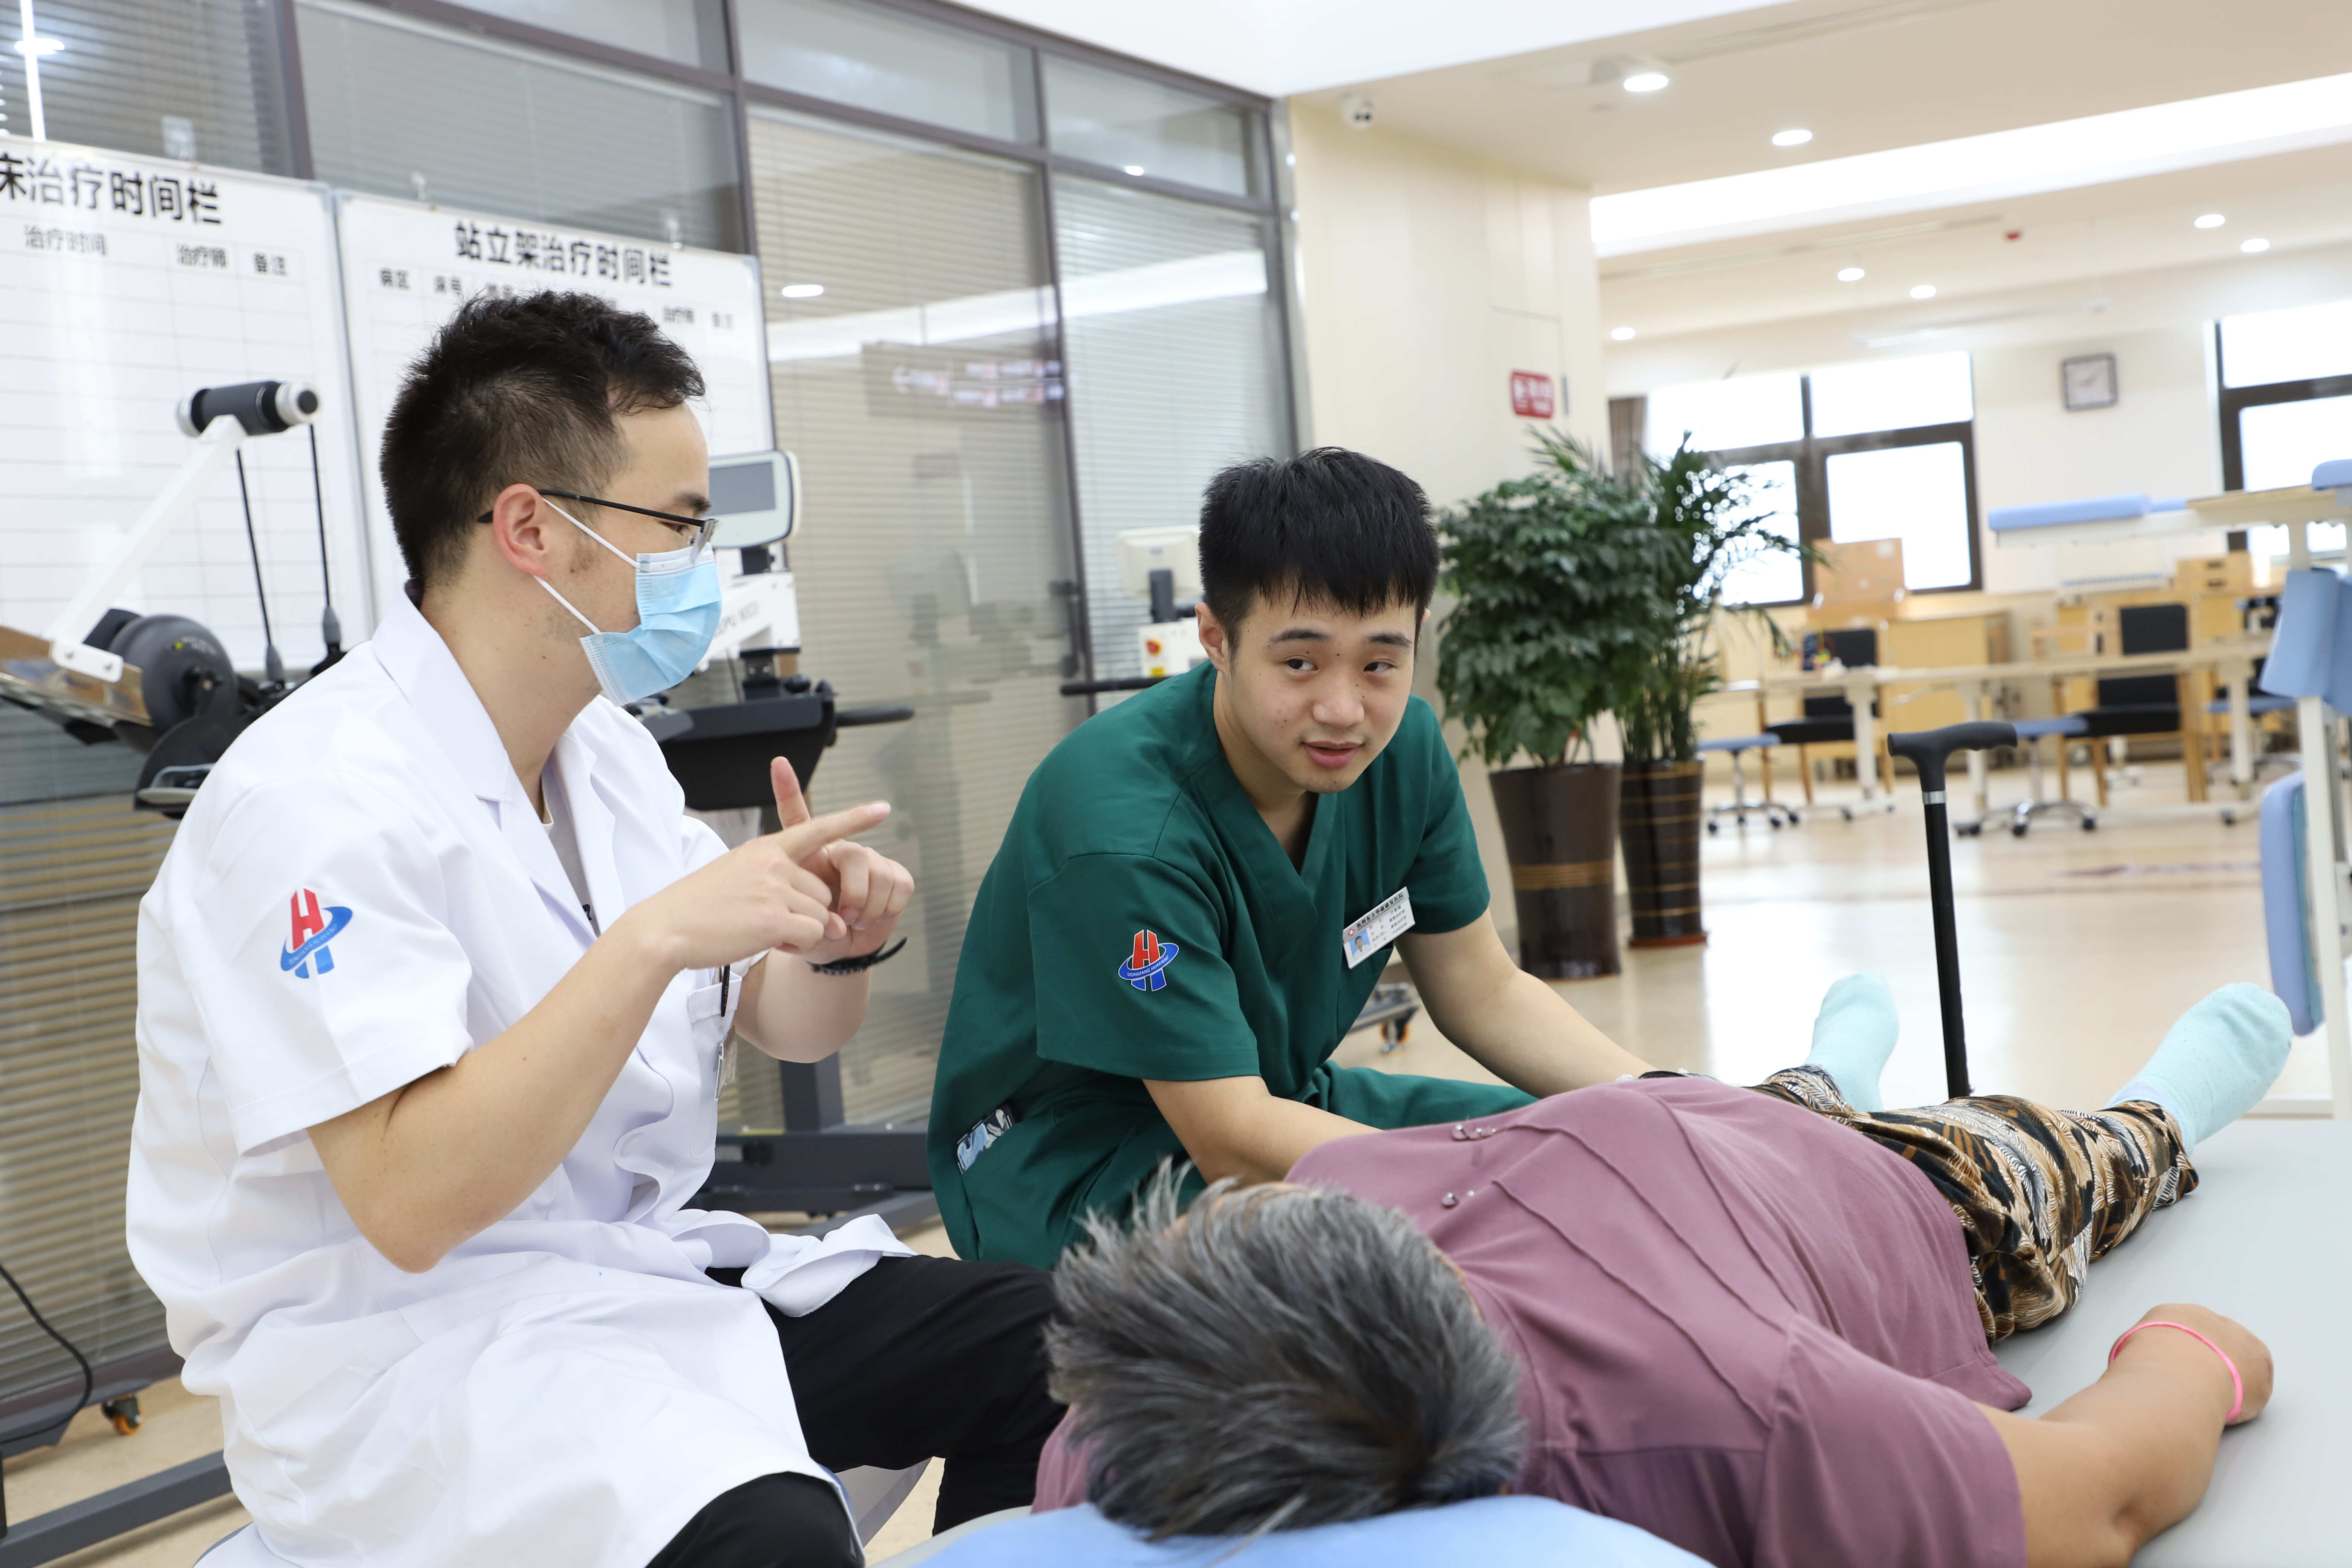 与爱同行，杭州金诚护理院用关爱与专业康复护理让失能老人安享晚年